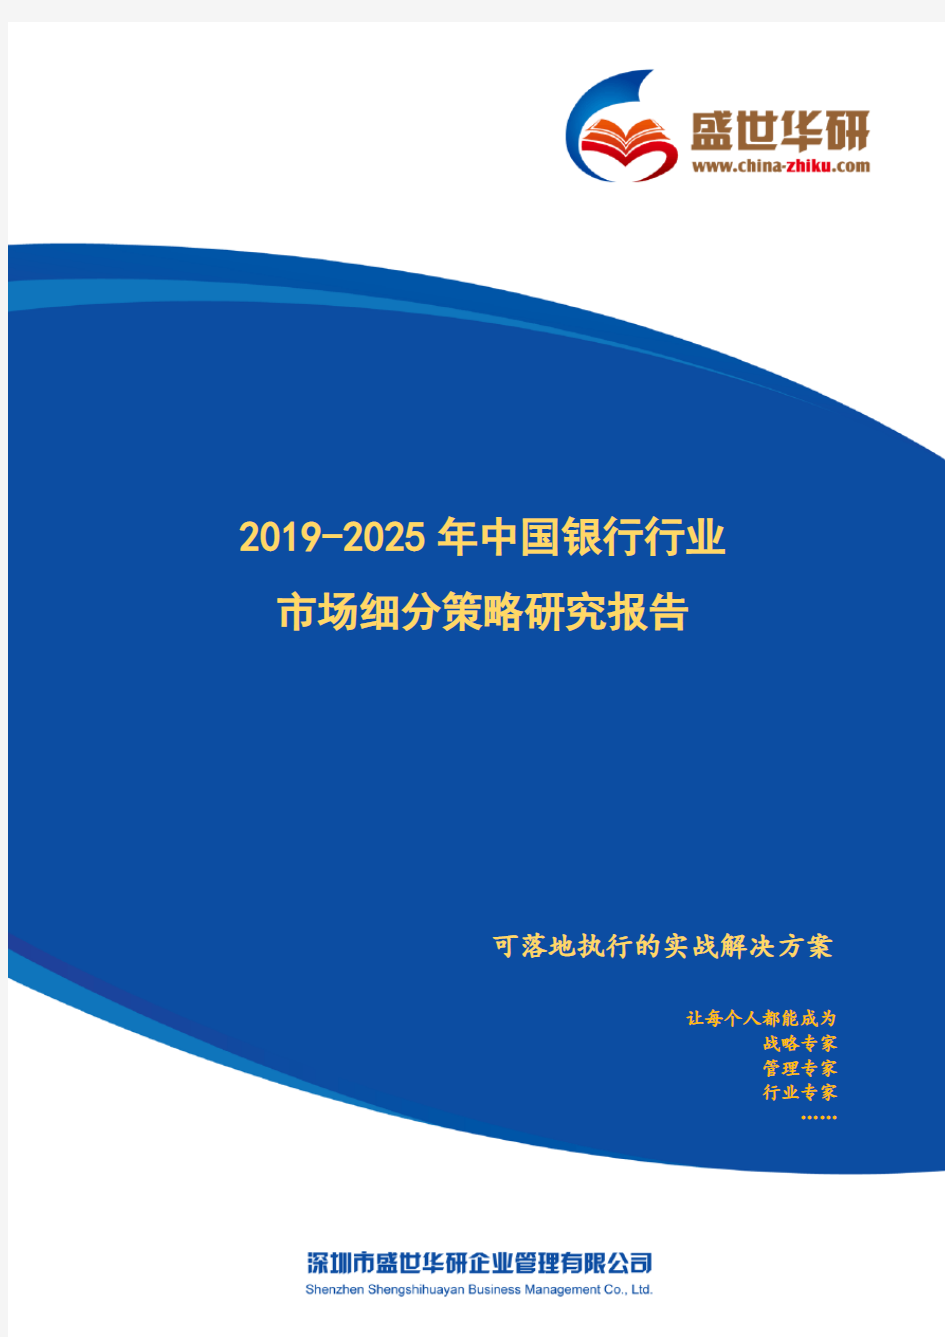 【完整版】2019-2025年中国银行行业市场细分策略研究报告